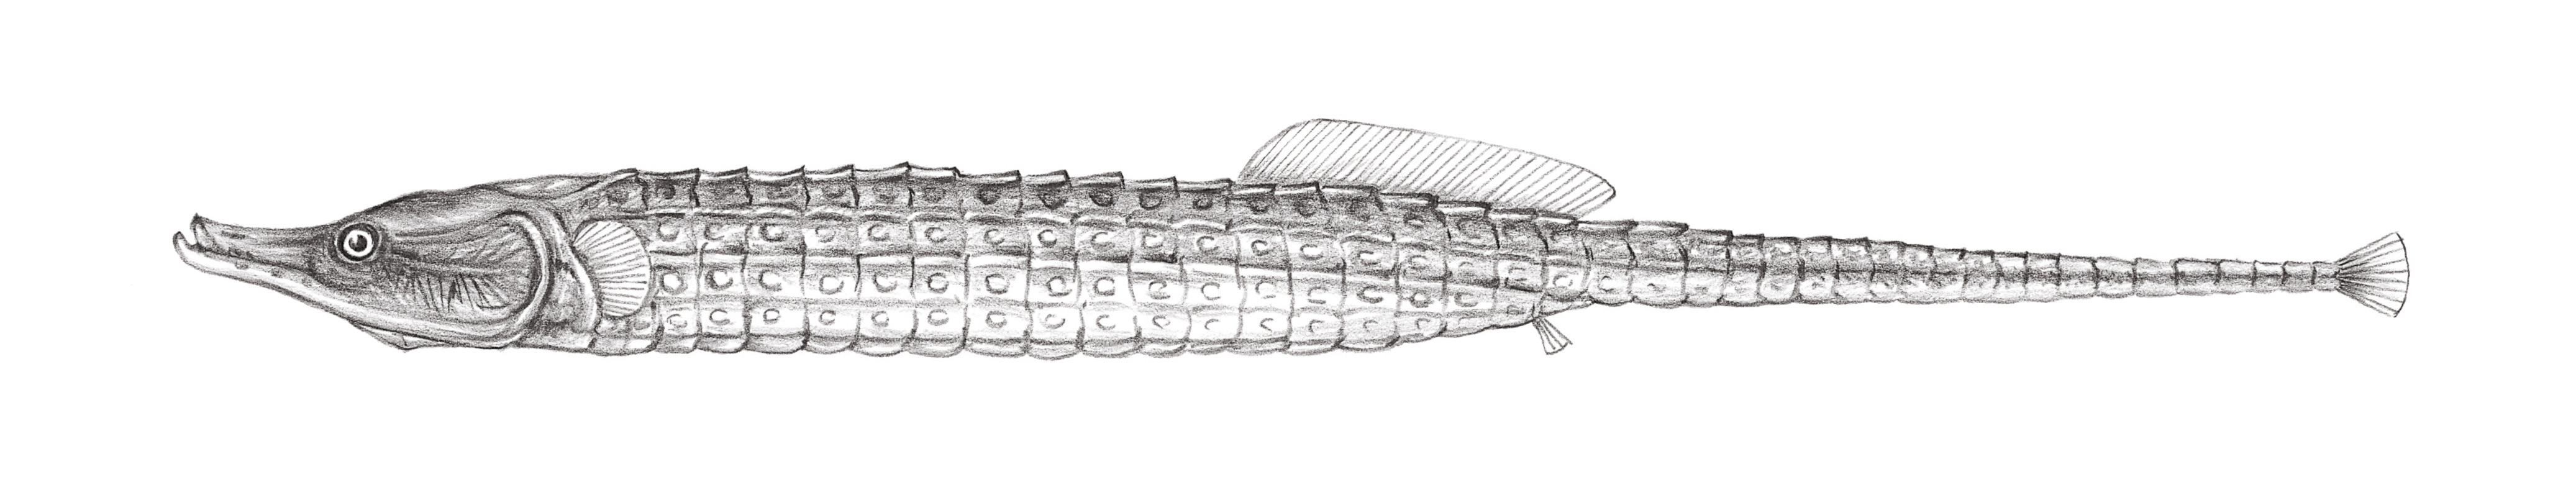 818.	彫紋海龍 Coeroichthys sculptus (Günther, 1870)